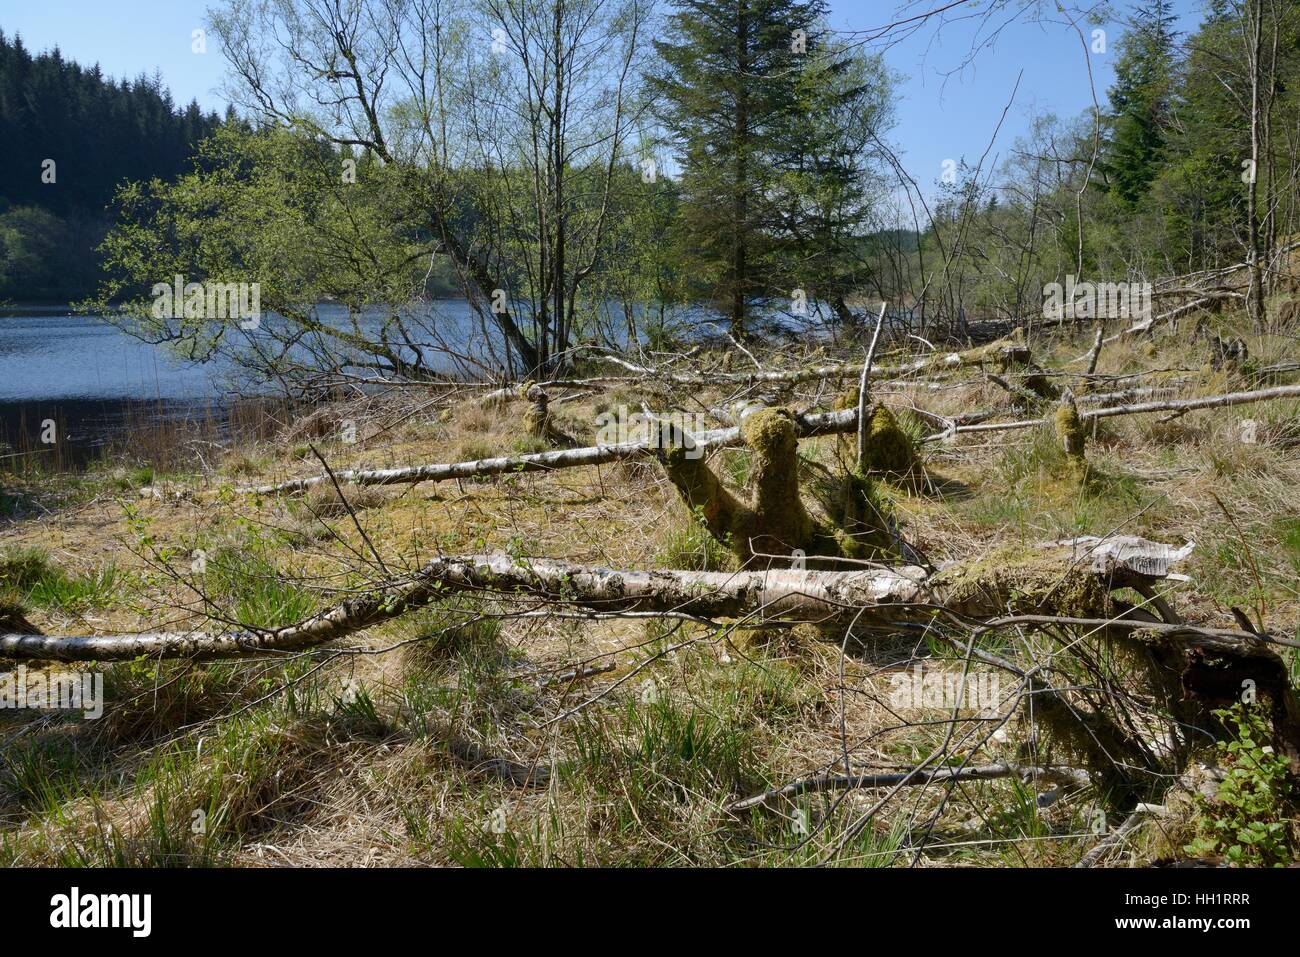 Bouleau pubescent (Betula pubescens) arbres abattus sur la marge d'un eurasien par lochan castors (Castor fiber), Knapdale, Ecosse, Royaume-Uni Banque D'Images